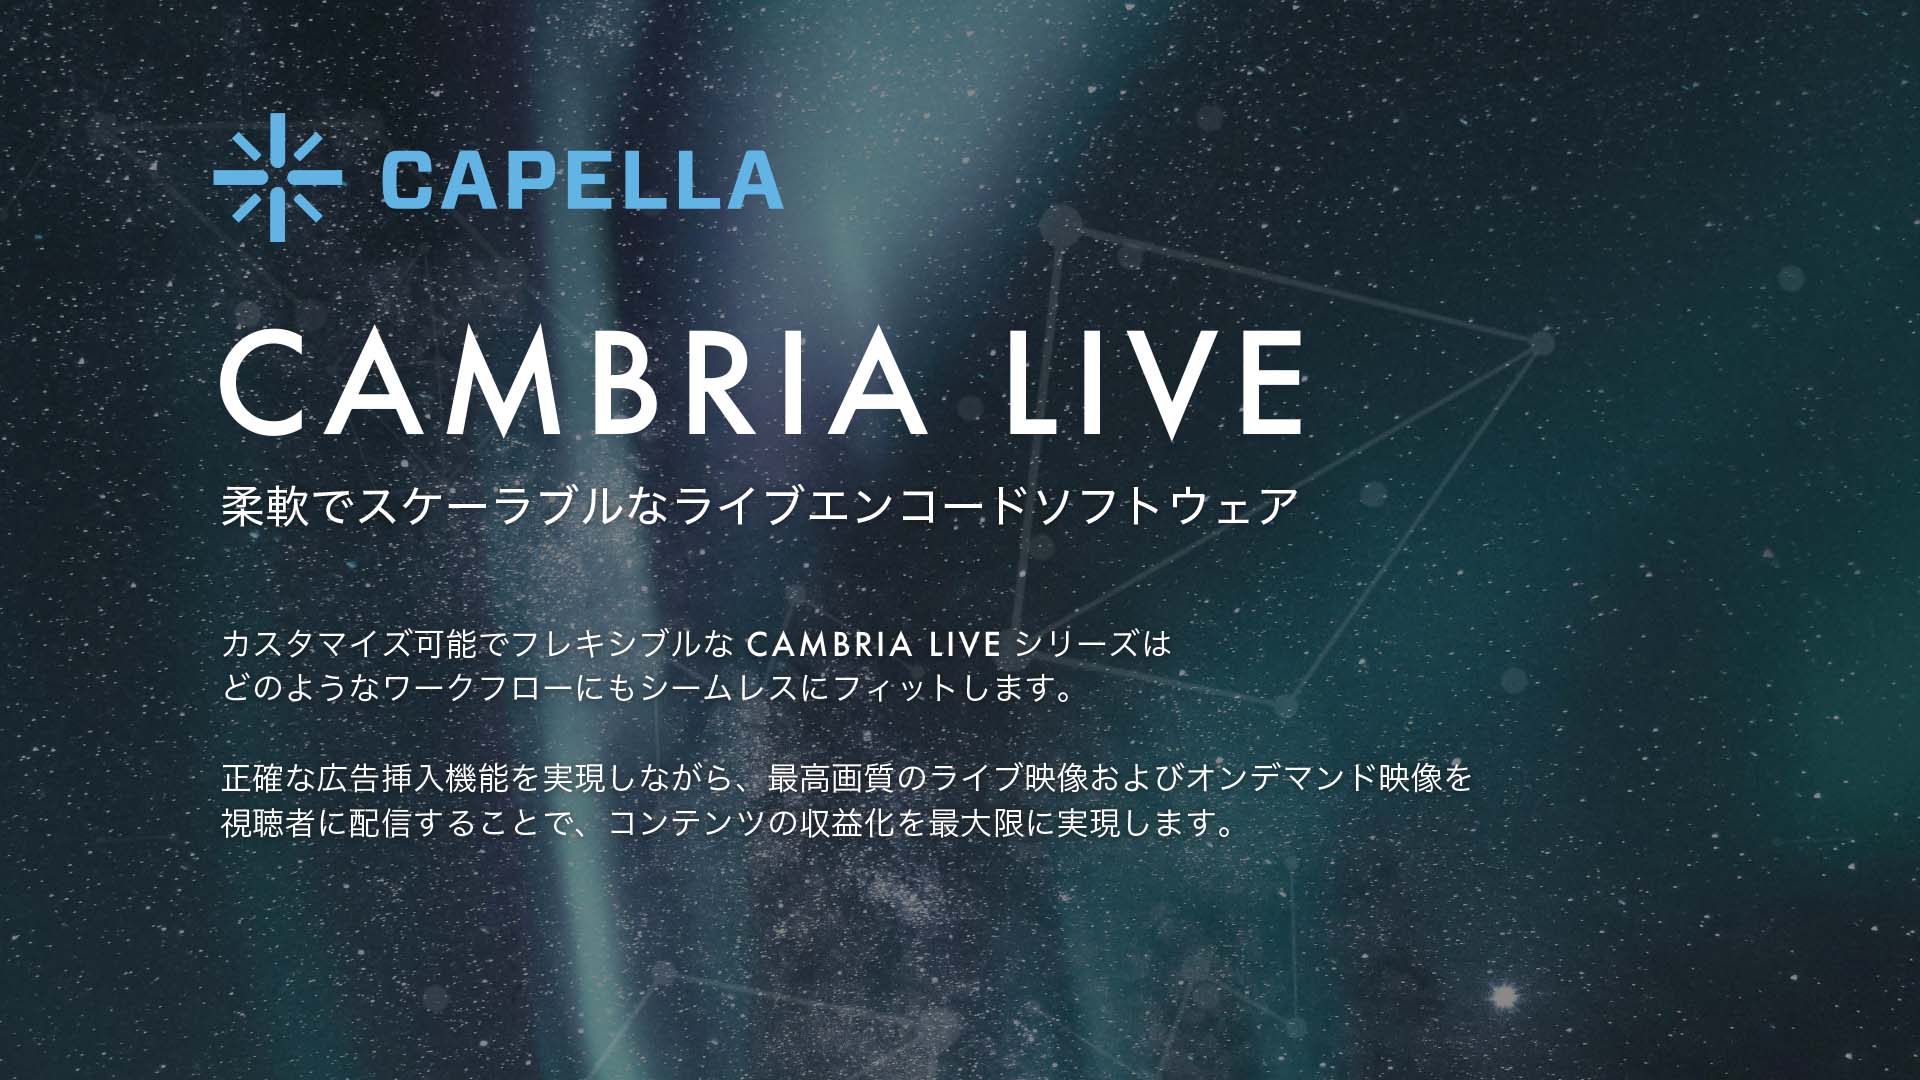 Cambria Live : 柔軟でスケーラブルなライブエンコードソフトウェア - カスタマイズ可能でフレキシブルな CAMBRIA LIVE シリーズはどのようなワークフローにもシームレスにフィットします。正確な広告挿入機能を実現しながら、最高画質のライブ映像およびオンデマンド映像を視聴者に配信することで、コンテンツの収益化を最大限に実現します。